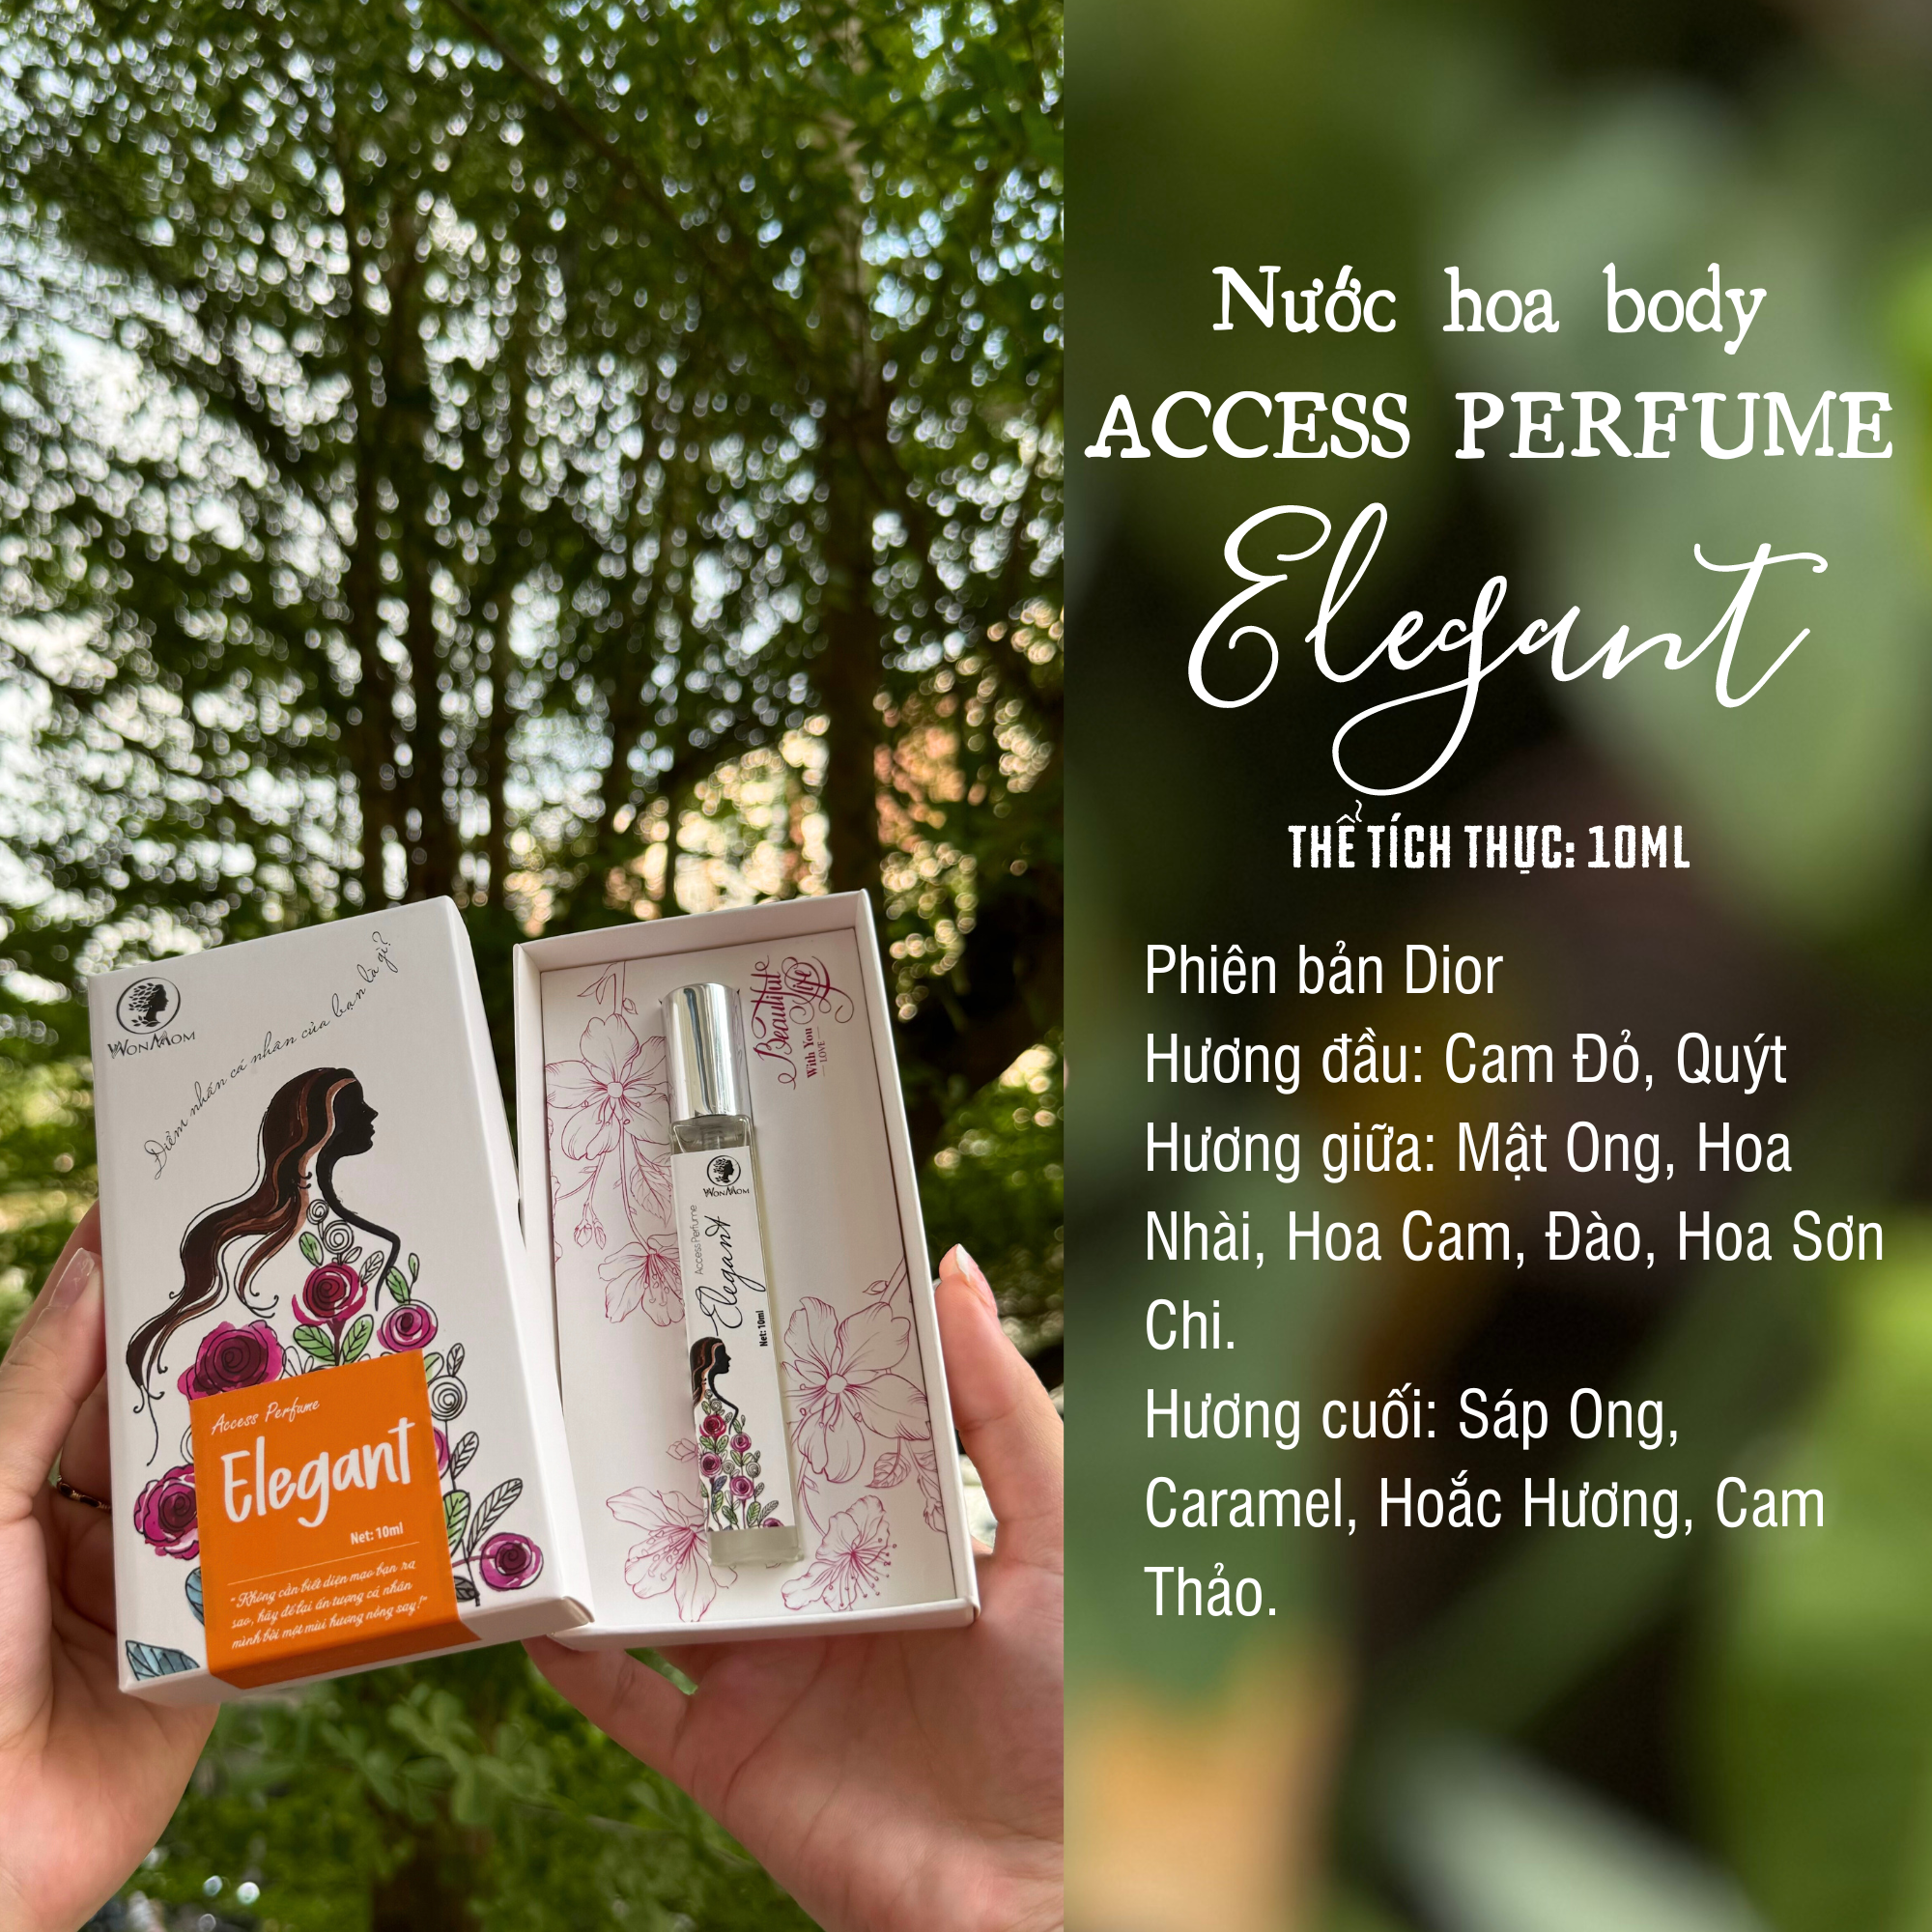 Nước hoa toàn thân Access perfume - Elegant